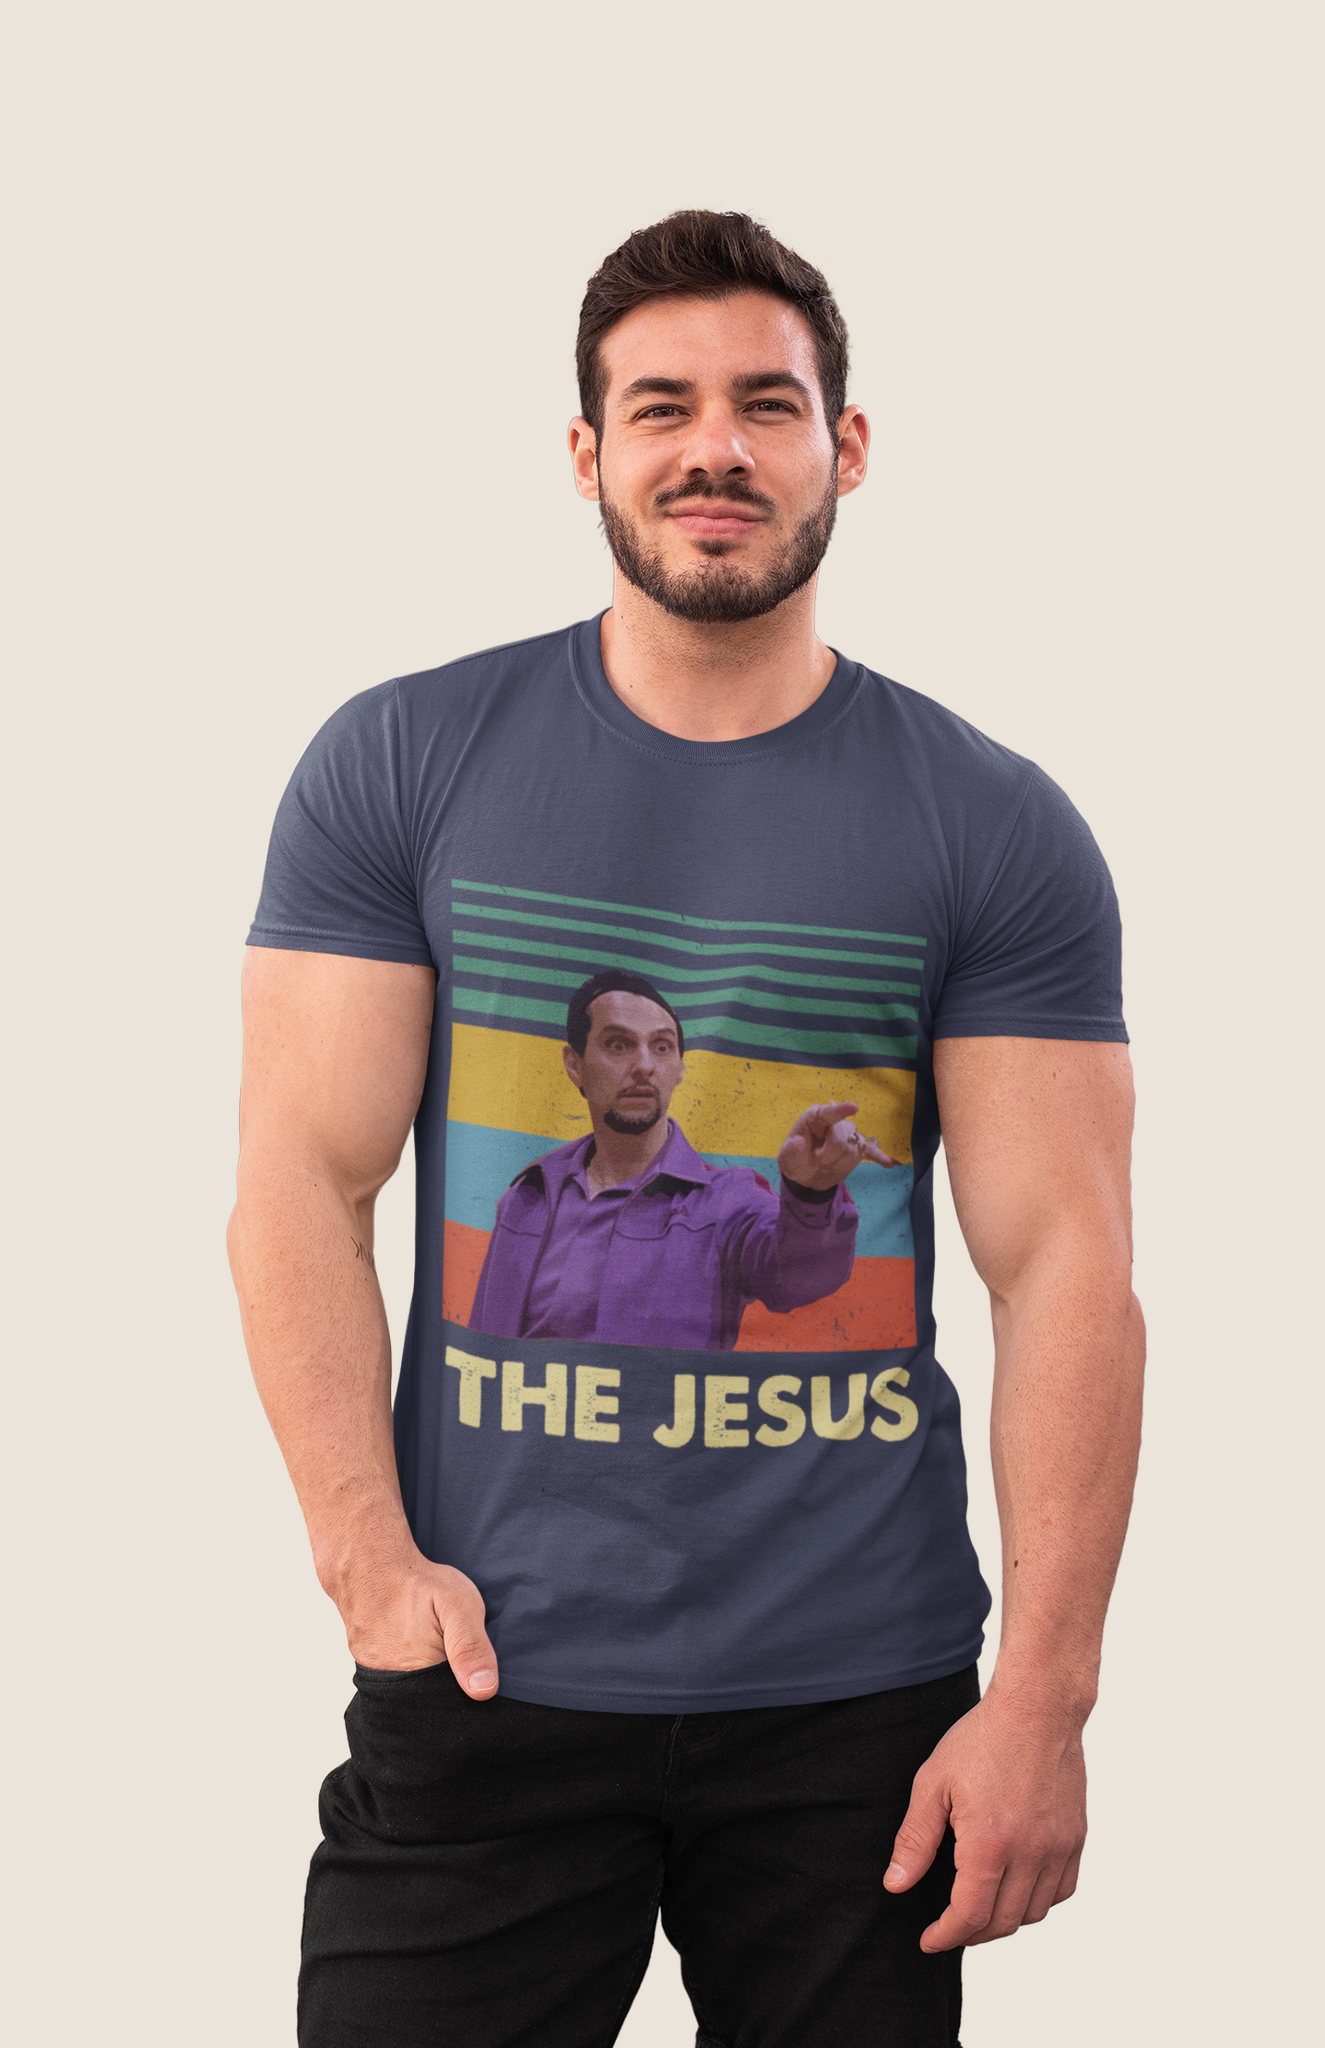 The Big Lebowski Vintage T Shirt, The Jesus Tshirt, Jesus Quintana T Shirt